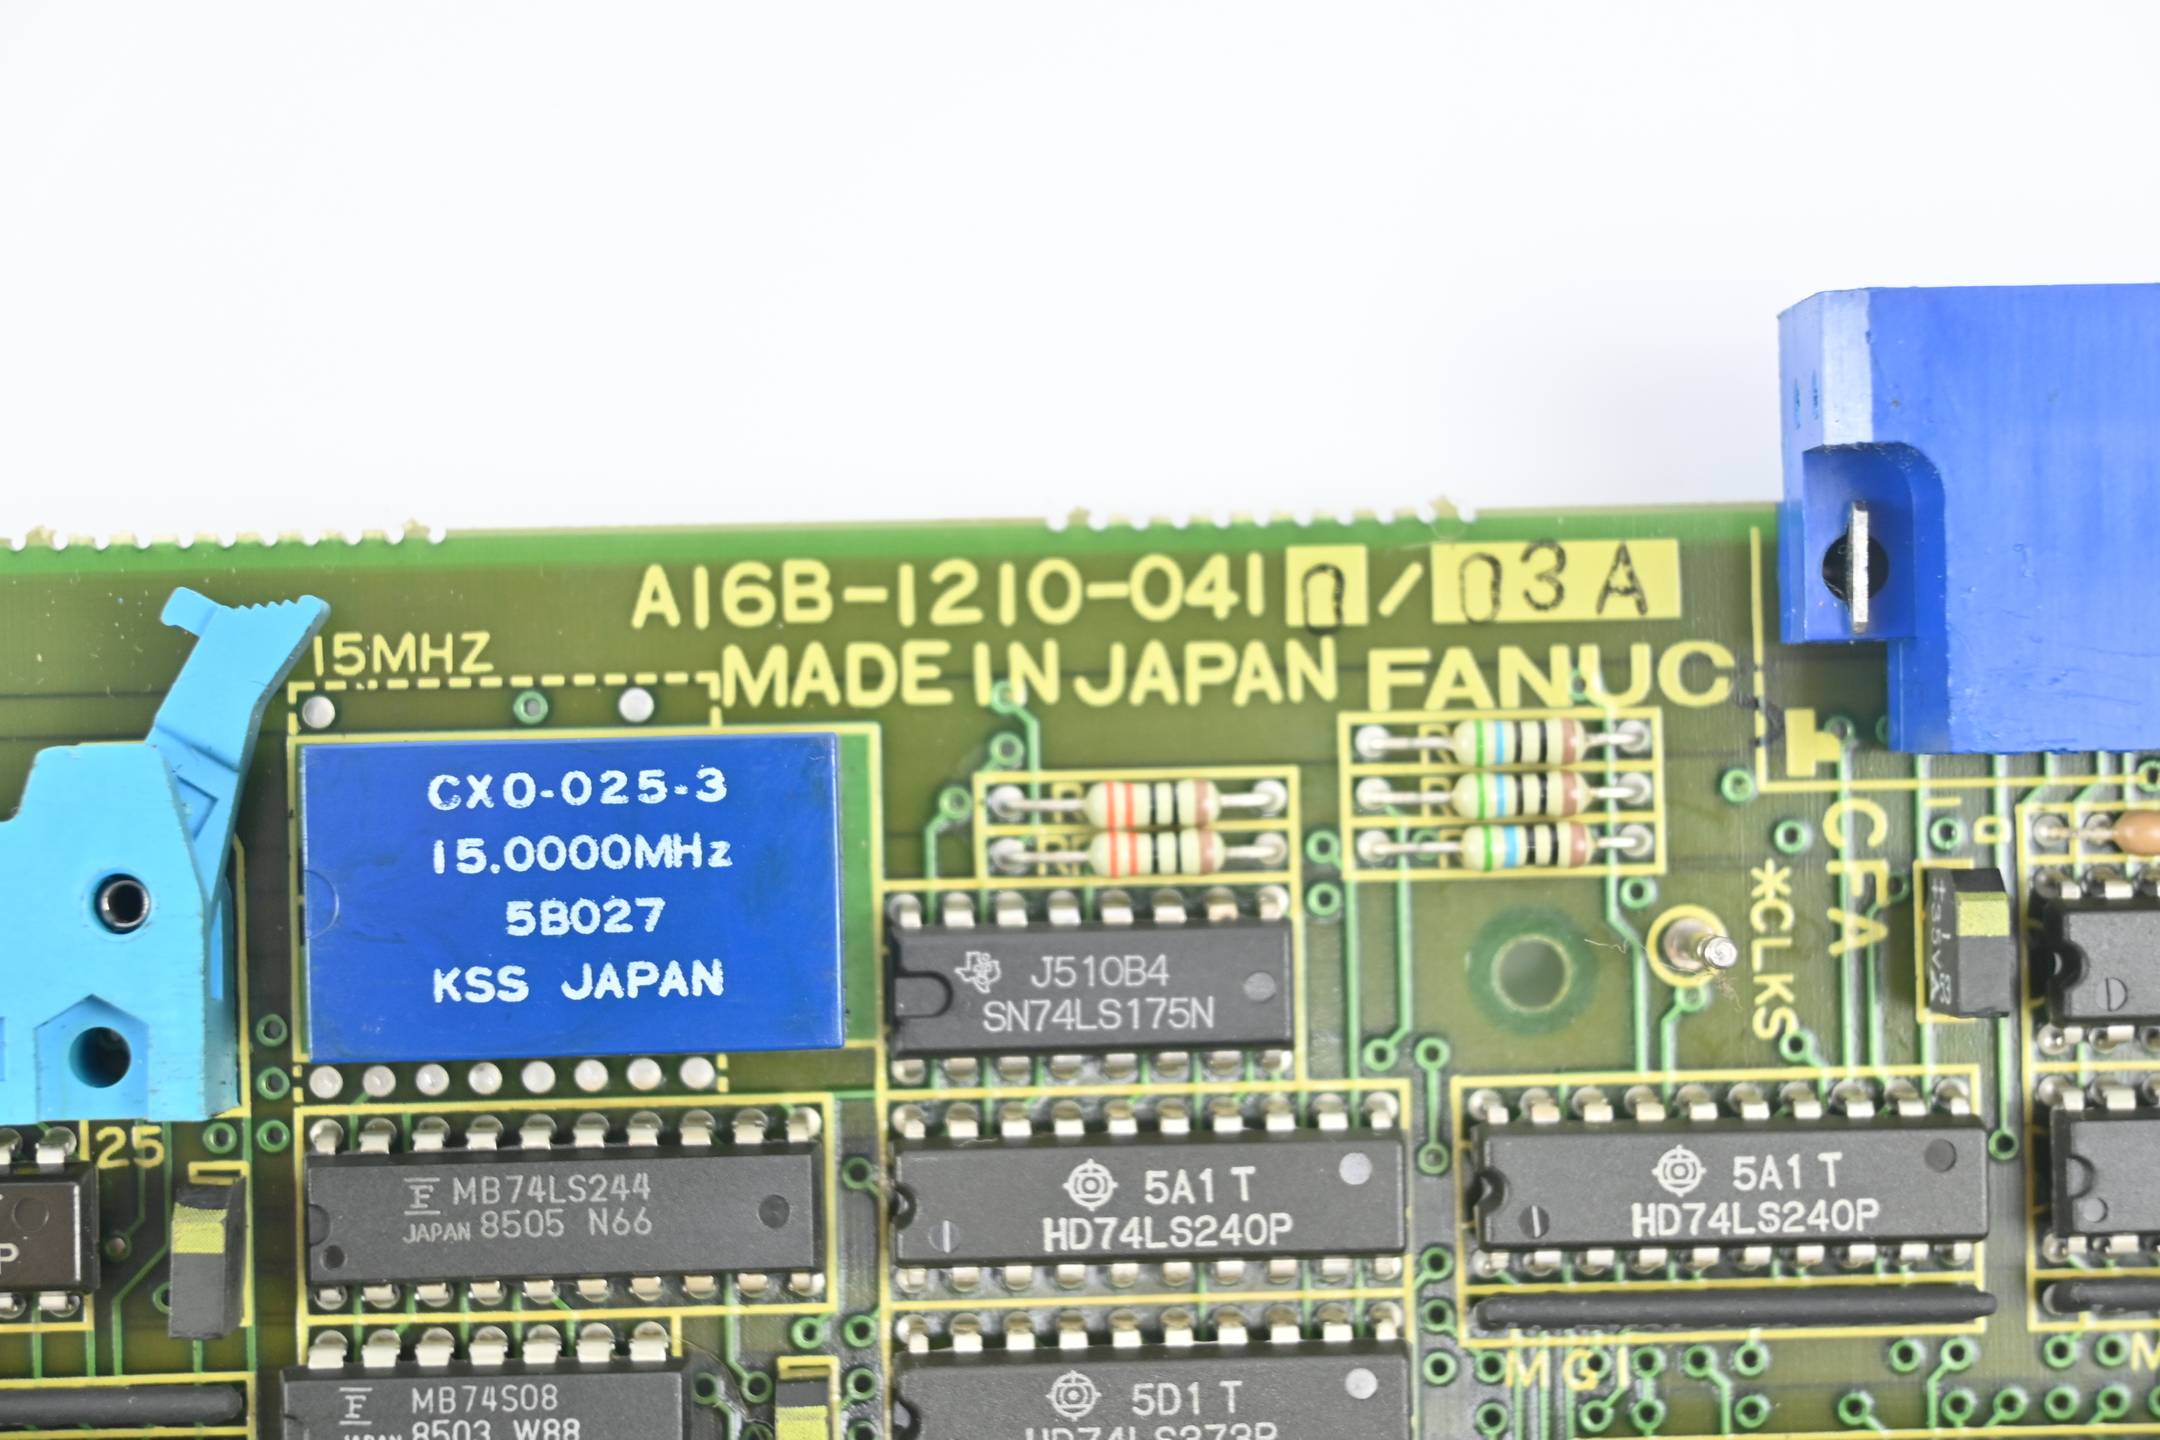 Fanuc ACP Board A16B-1210-0410 ( A16B-1210-0410/03A )